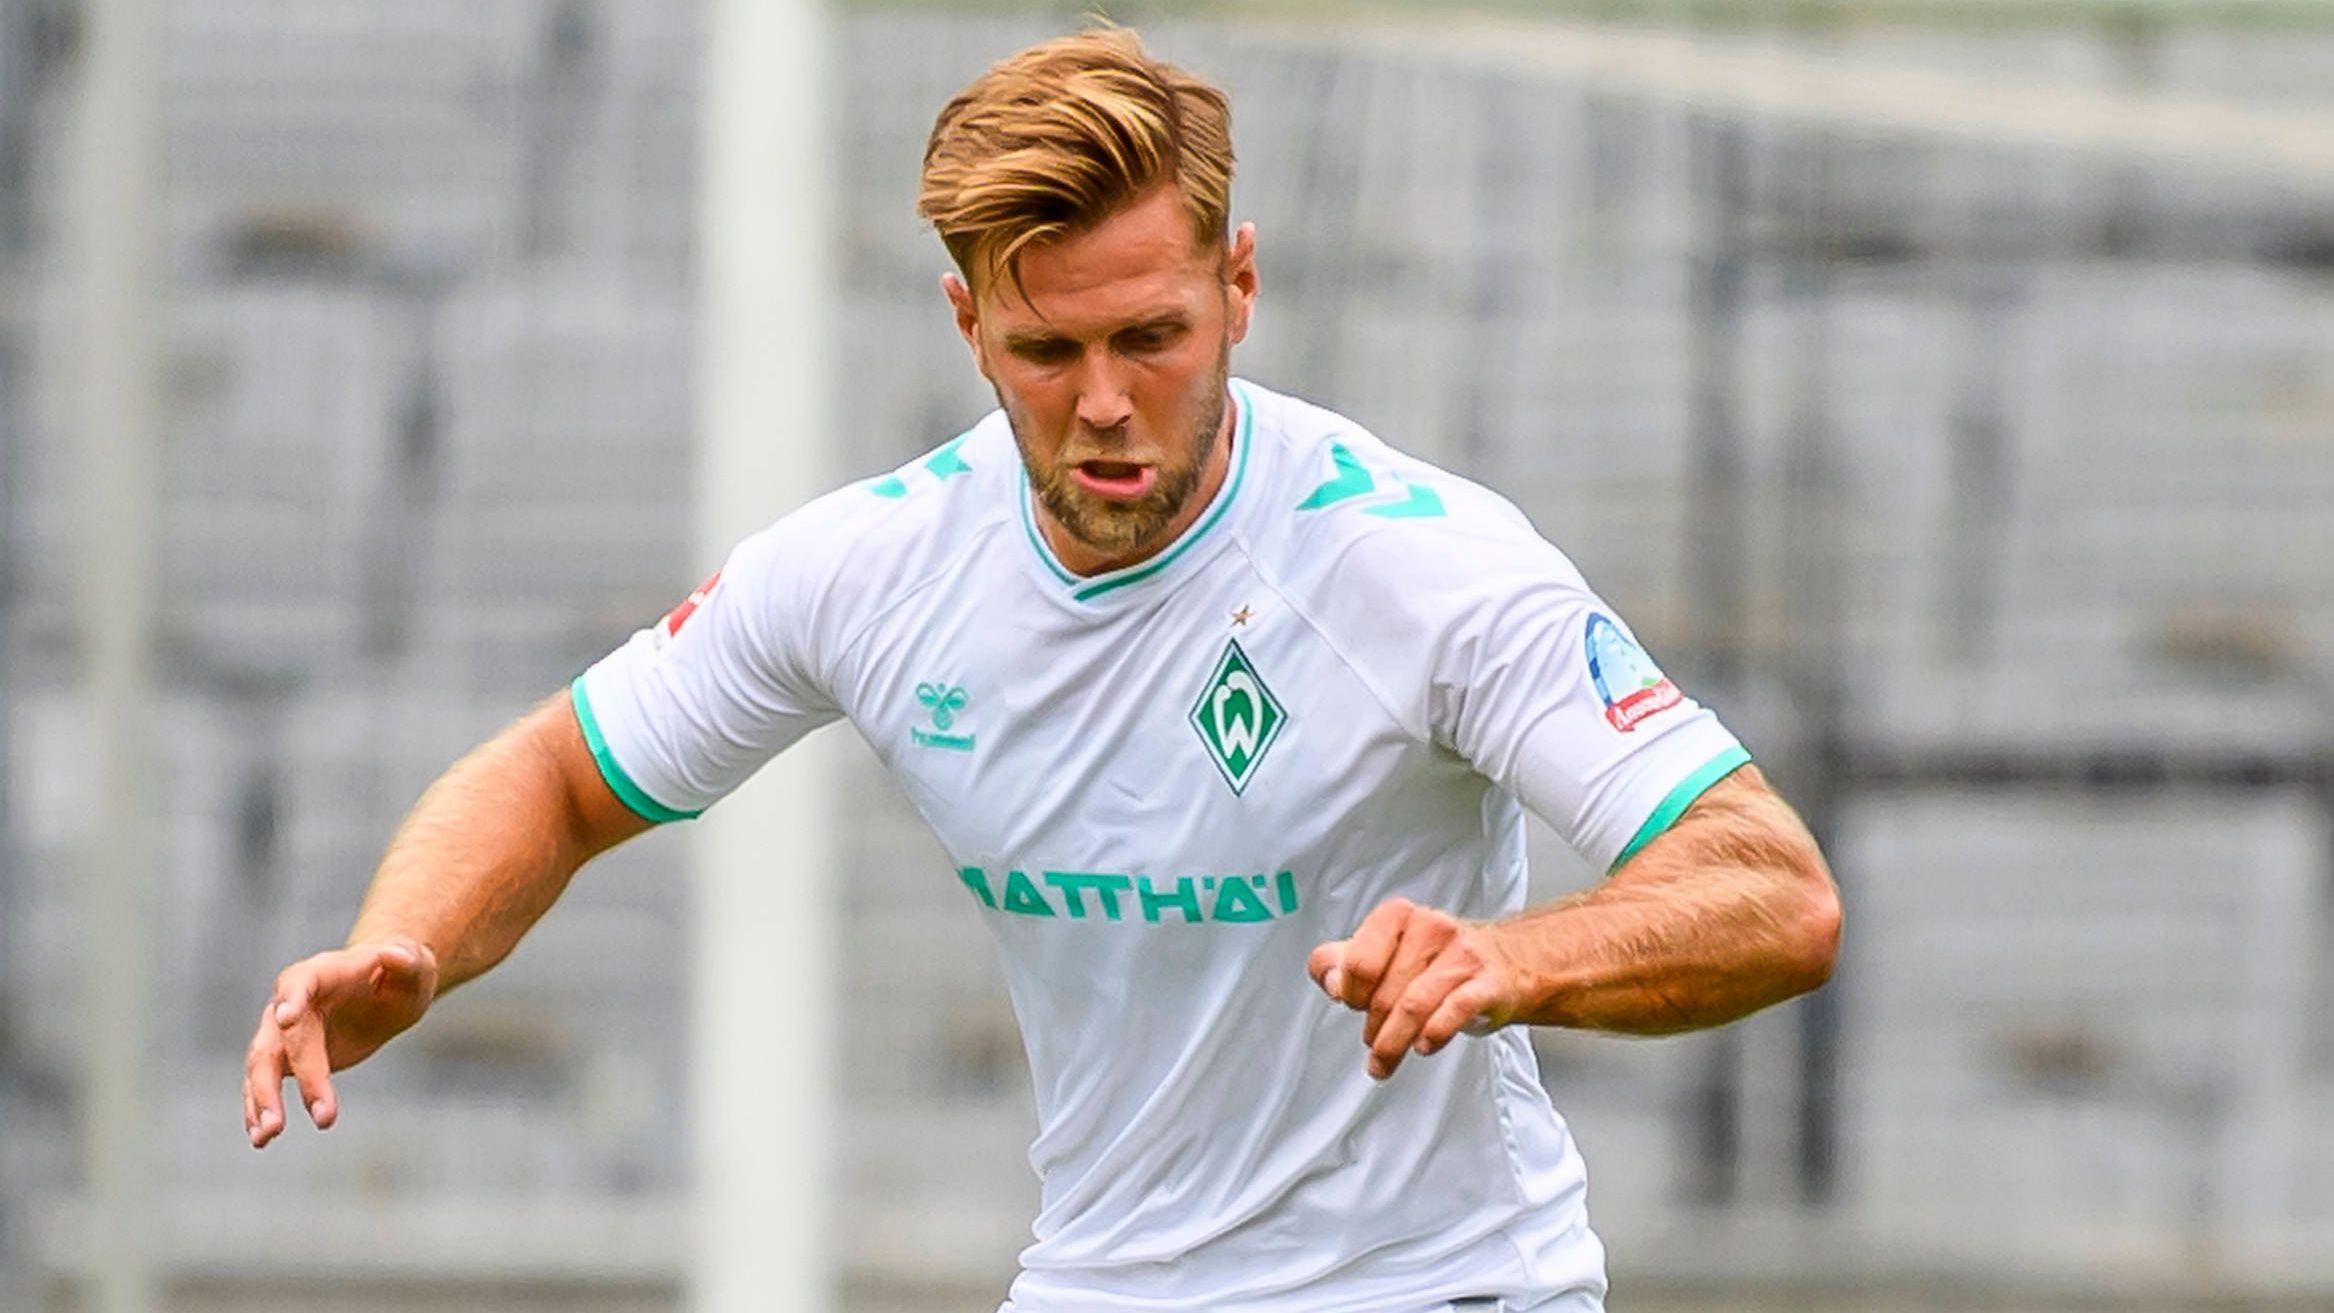 <strong>SV Werder Bremen</strong><br>- Trikotsponsor: Matthäi<br>- Einnahmen: 7 Millionen Euro jährlich